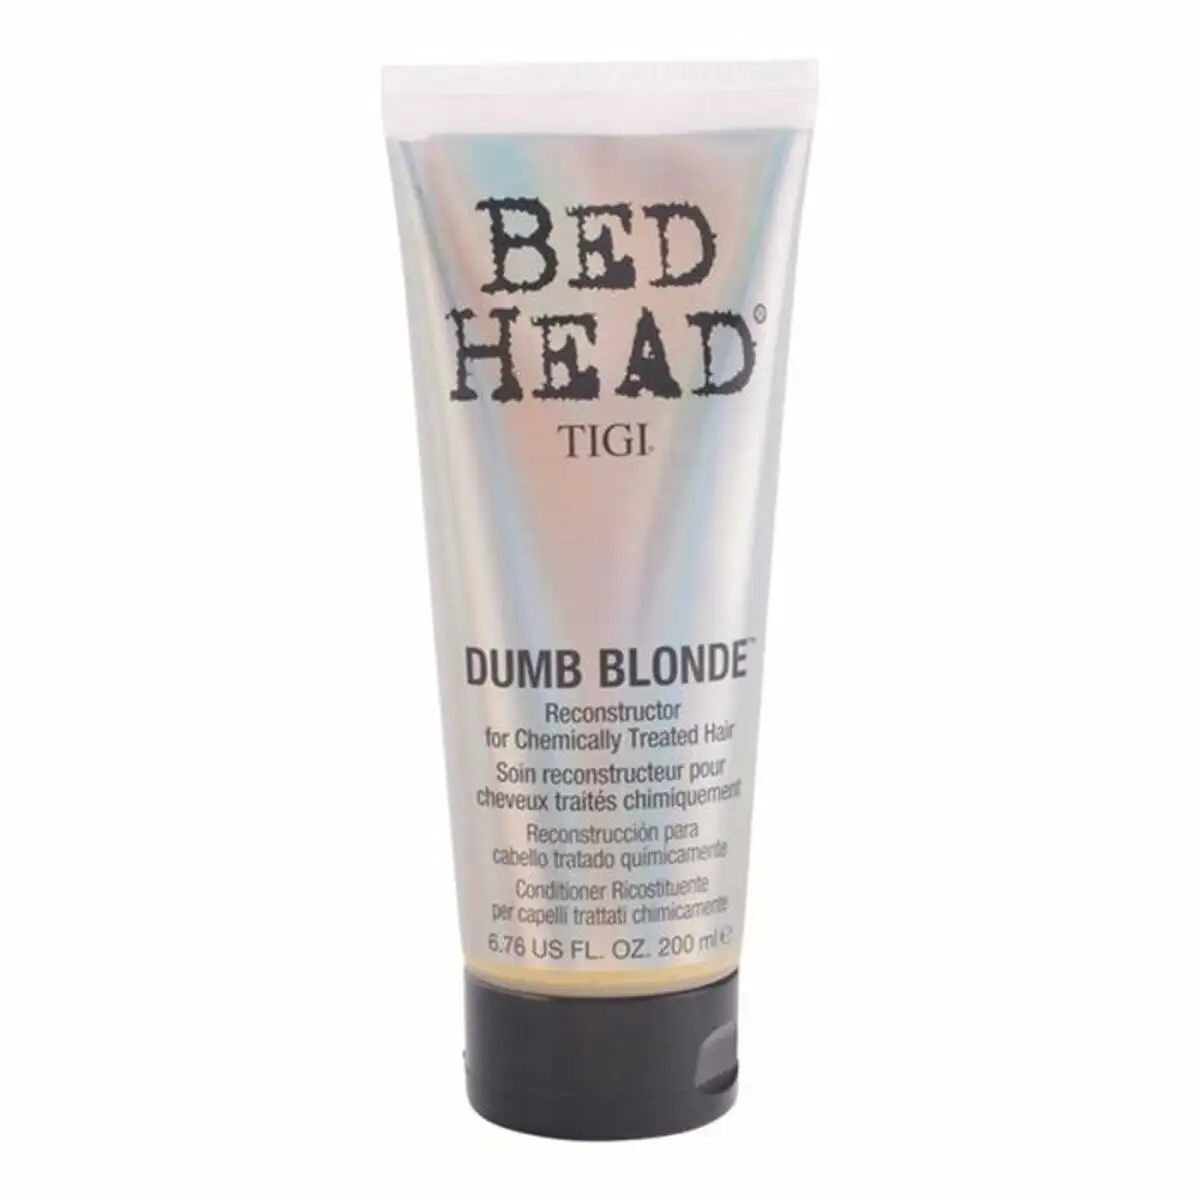 Apre s shampooing bed head dumb blonde tigi 200 ml 750 ml_5026. DIAYTAR SENEGAL - Votre Source de Découvertes Shopping. Découvrez des trésors dans notre boutique en ligne, allant des articles artisanaux aux innovations modernes.